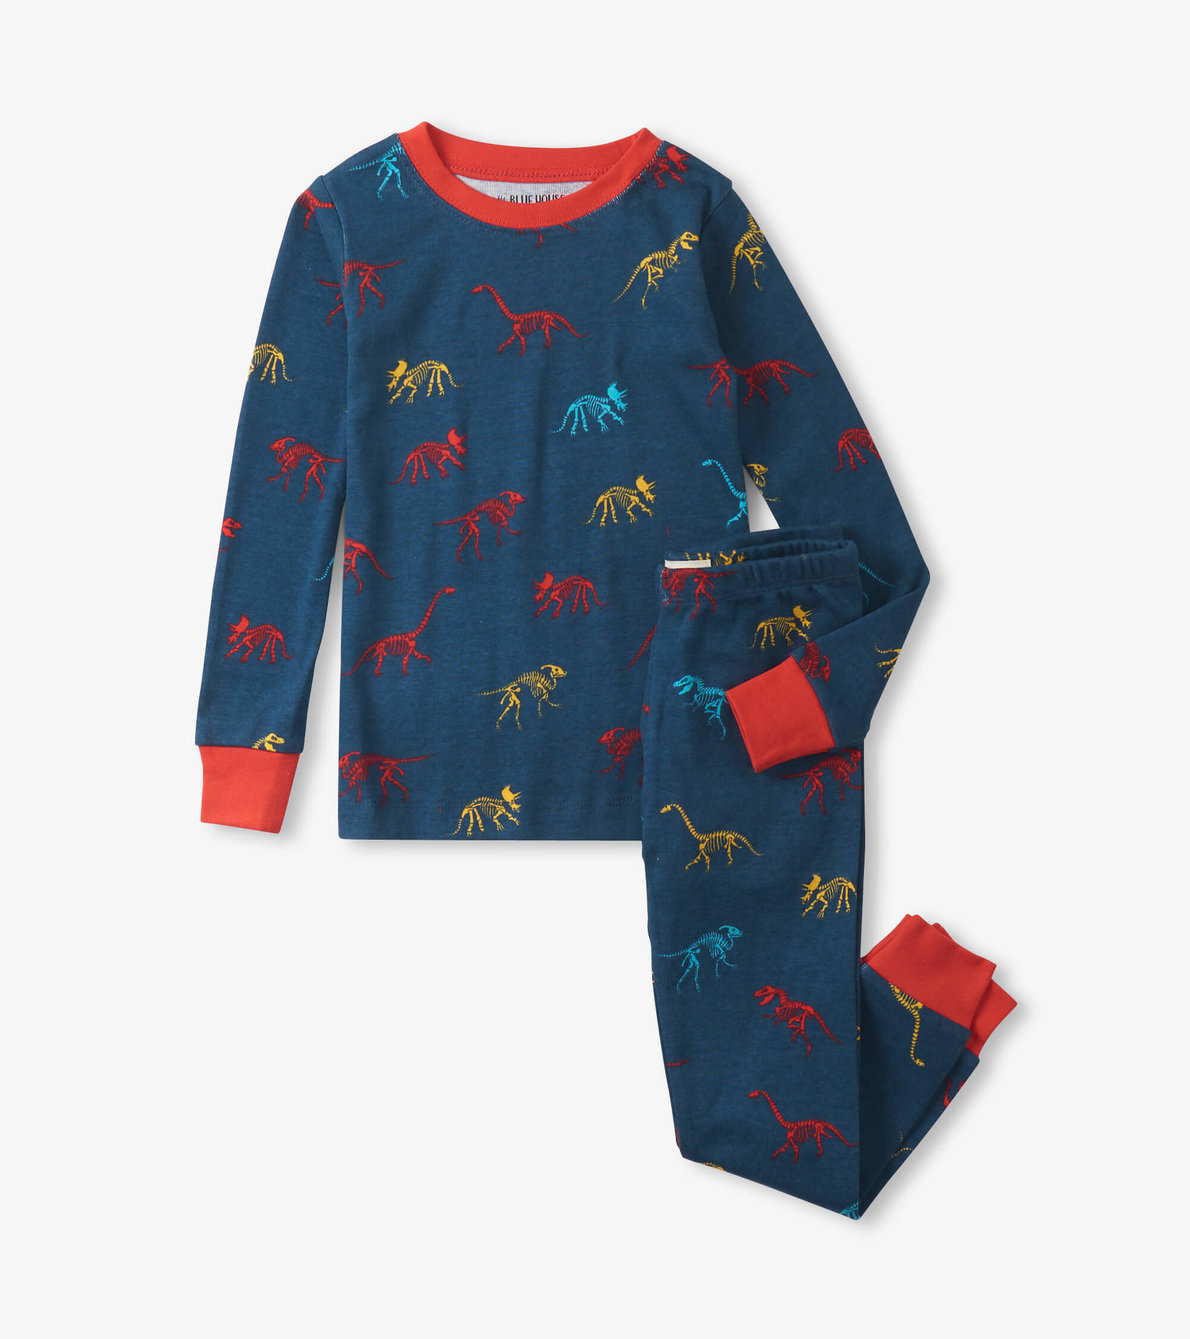 View larger image of Dino Bones Kids Pajama Set